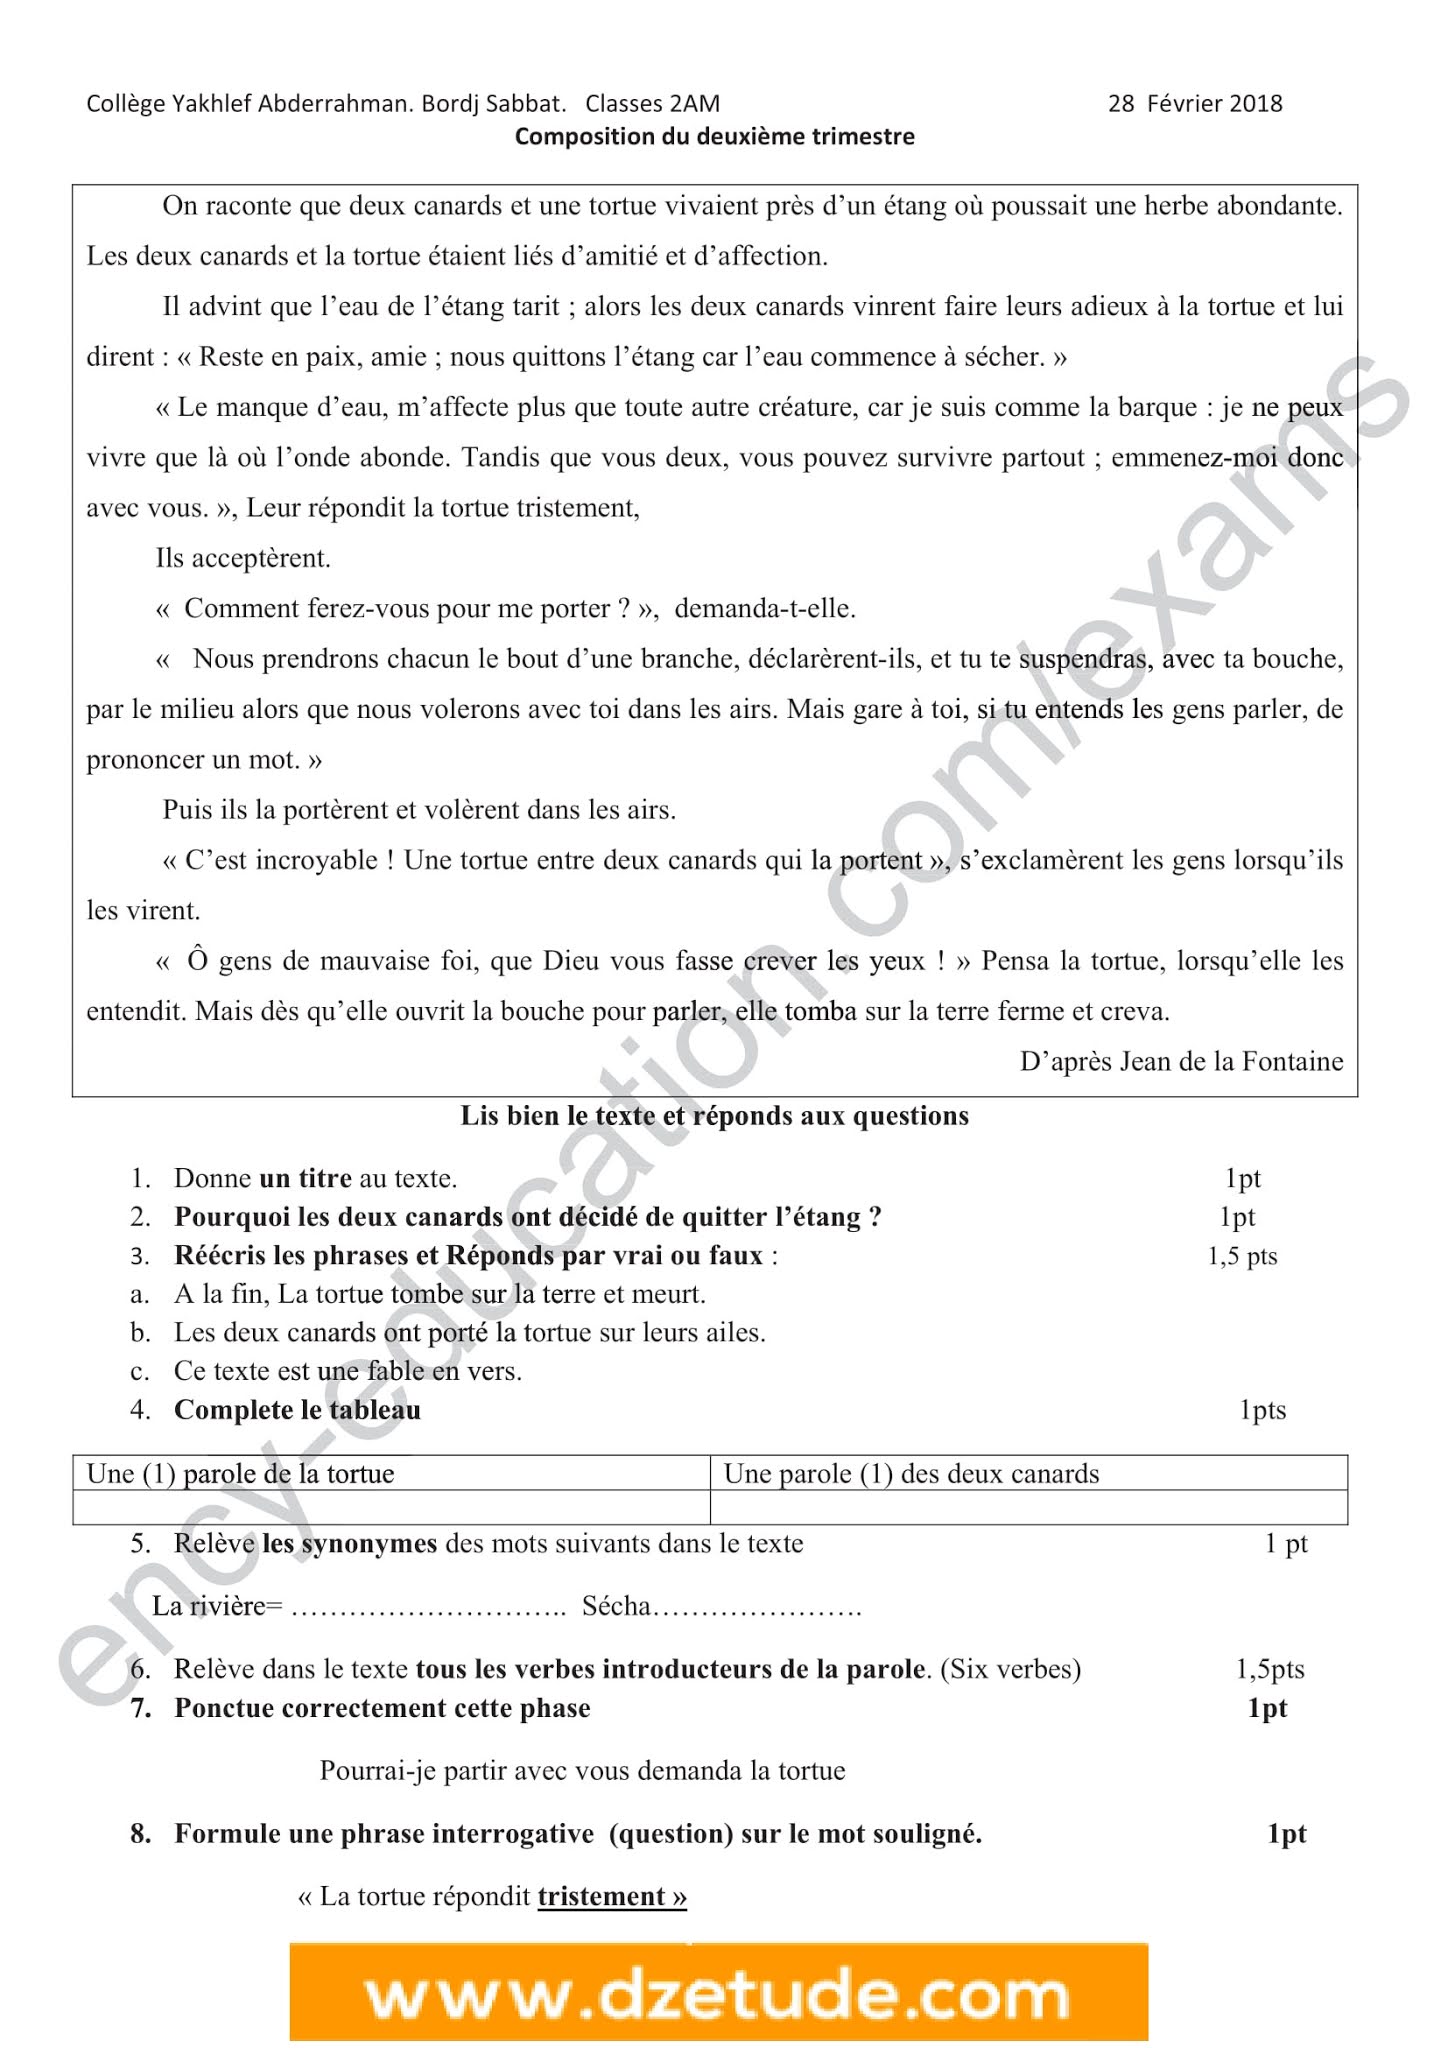 إختبار اللغة الفرنسية الفصل الثاني للسنة الثانية متوسط - الجيل الثاني نموذج 9